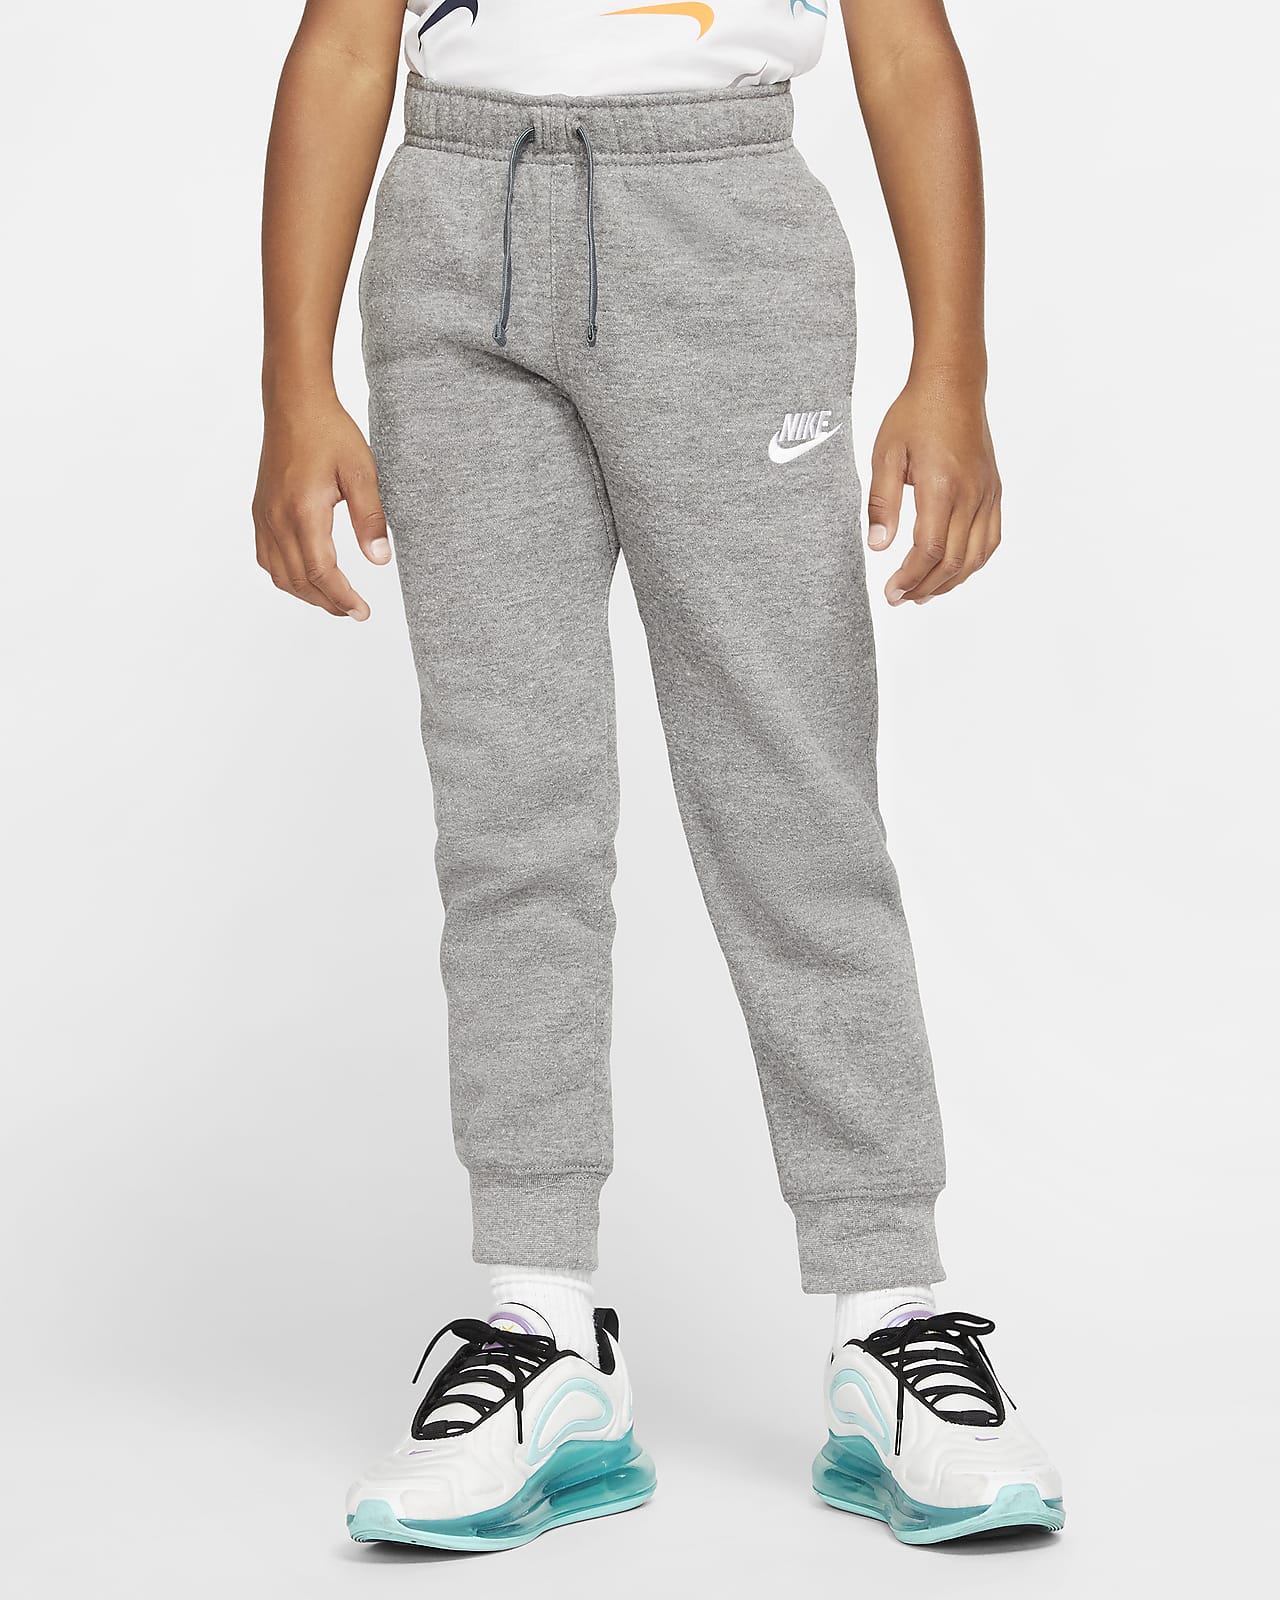 Sportswear Club Fleece Younger Kids' Trousers. Nike